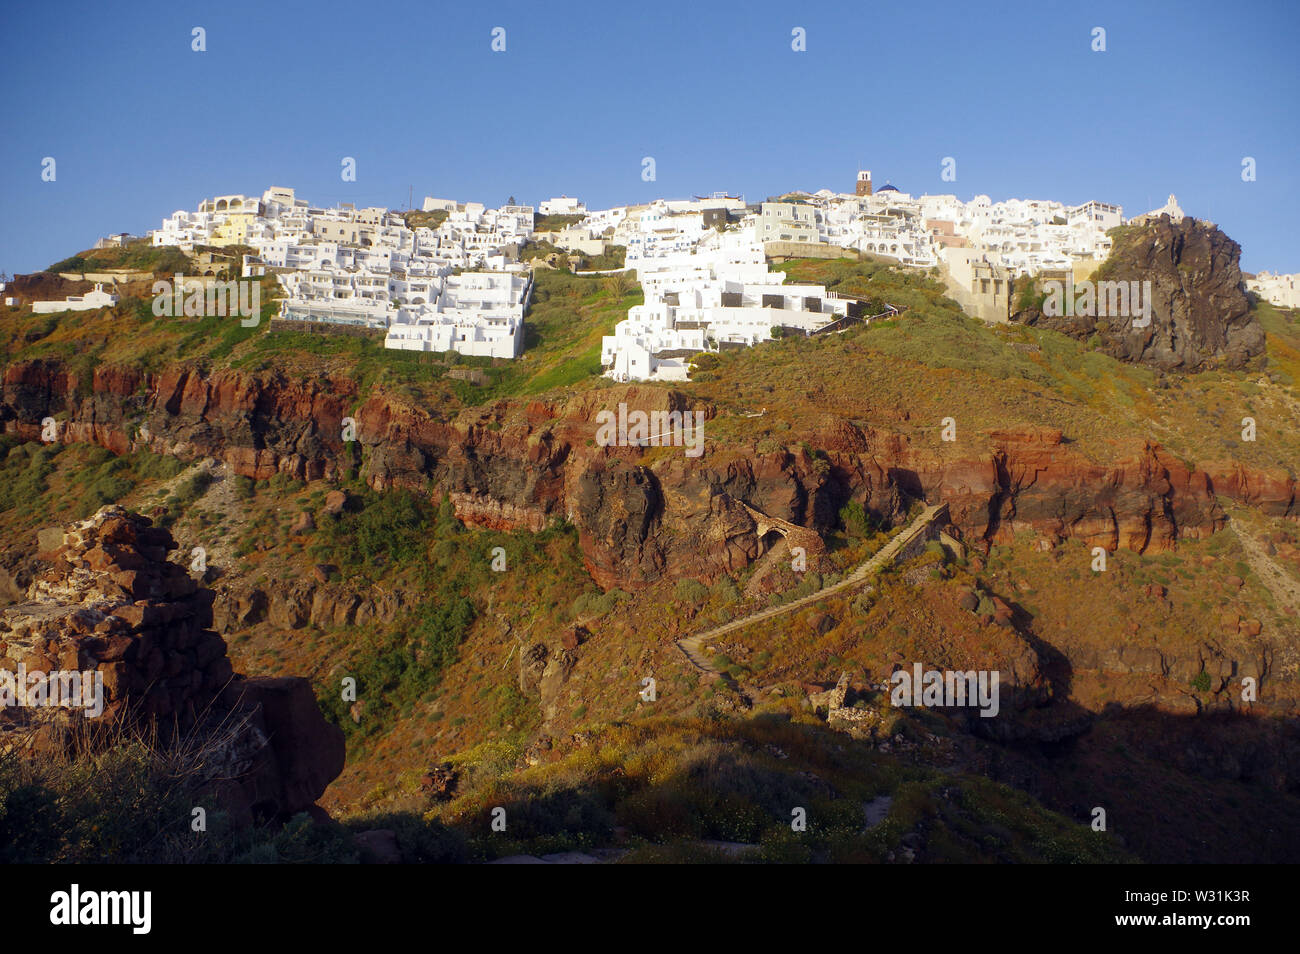 Dorf Imerovigli auf der Insel Santorini, Griechenland Stockfoto